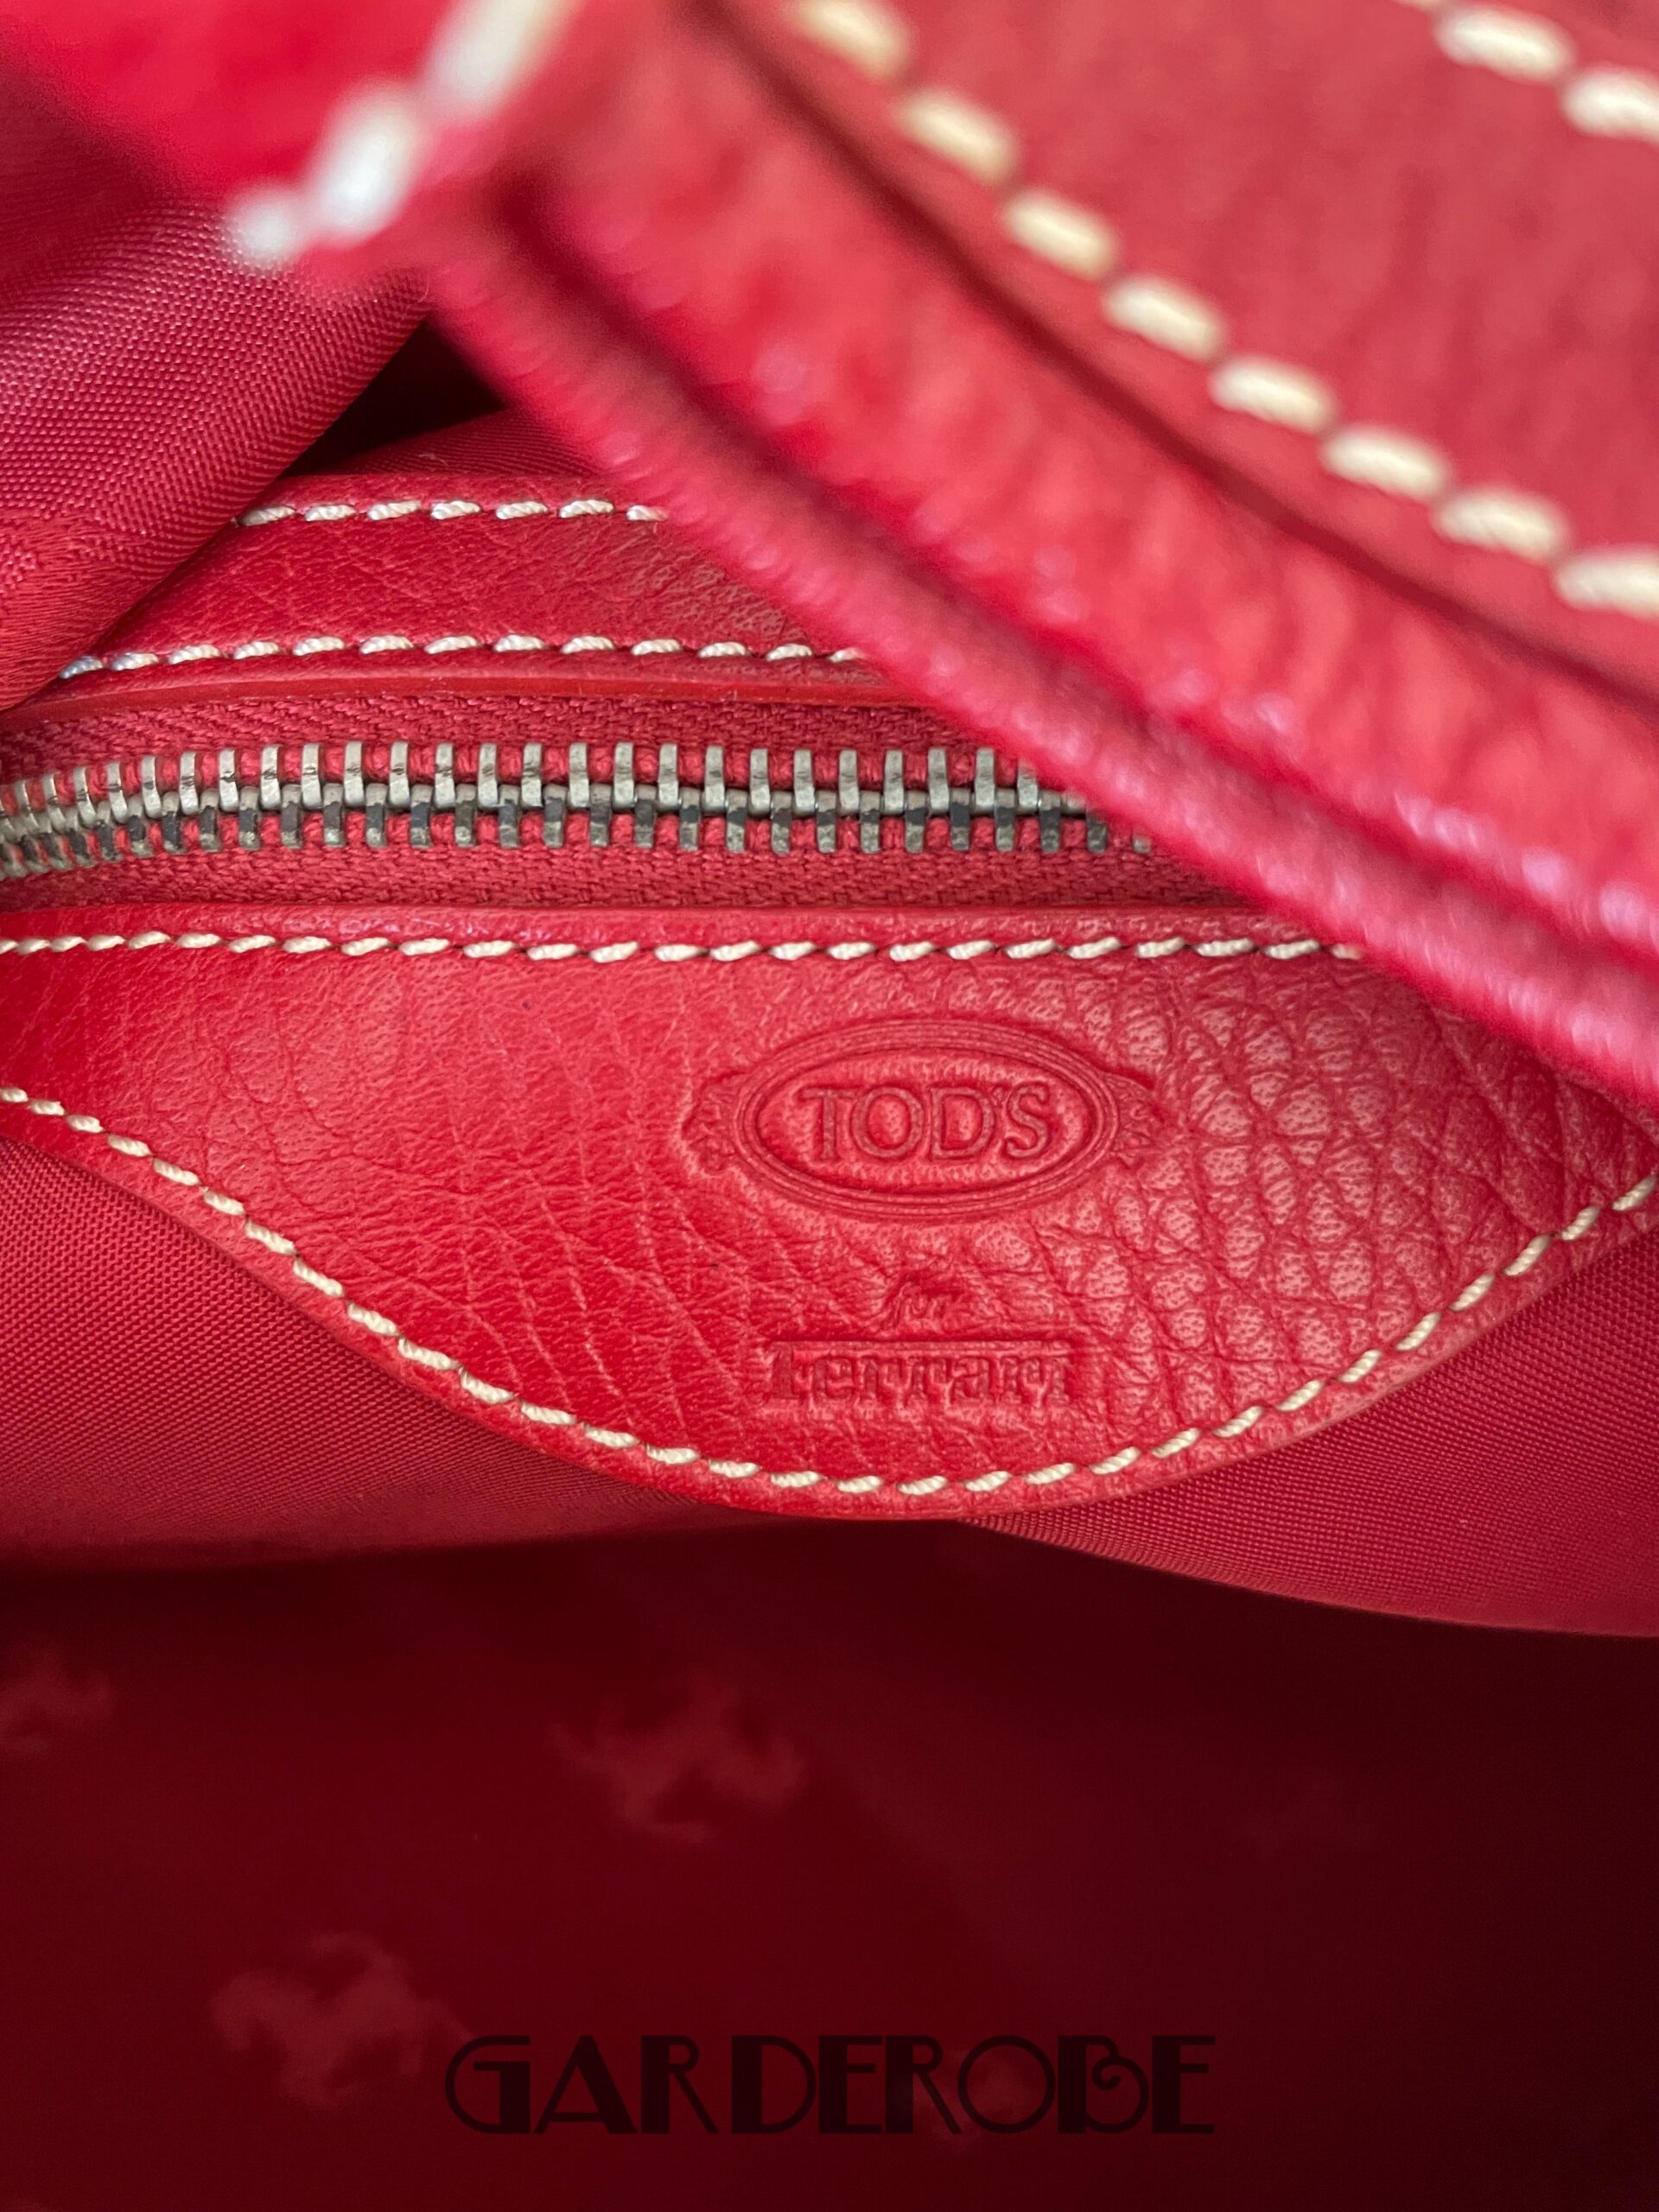 Rode stevige Tod’s handtas zonder gebruikssporen